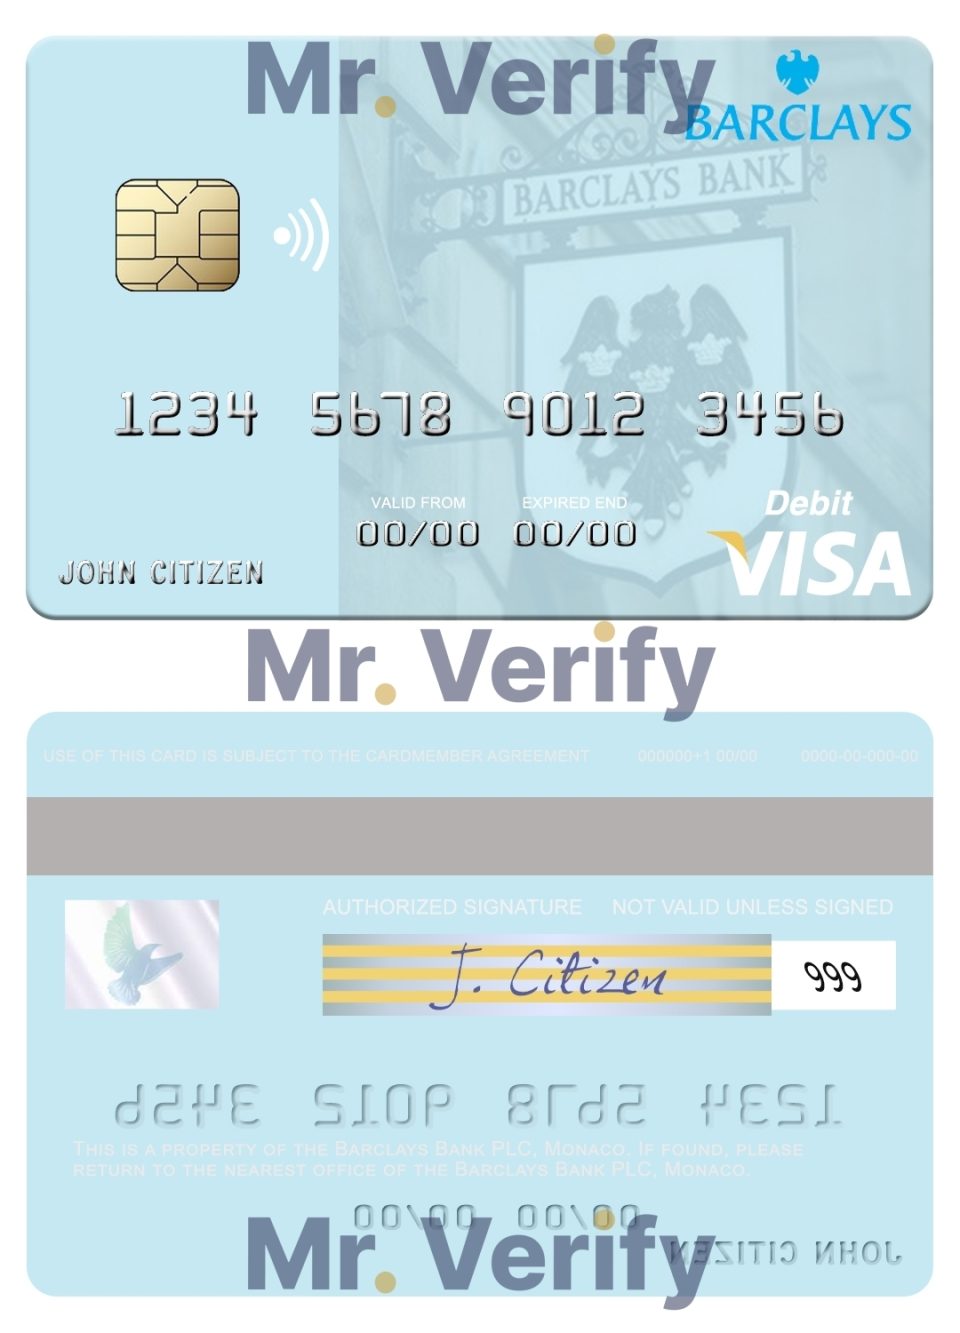 Editable Monaco Barclays Bank PLC bank visa debit card Templates in PSD Format